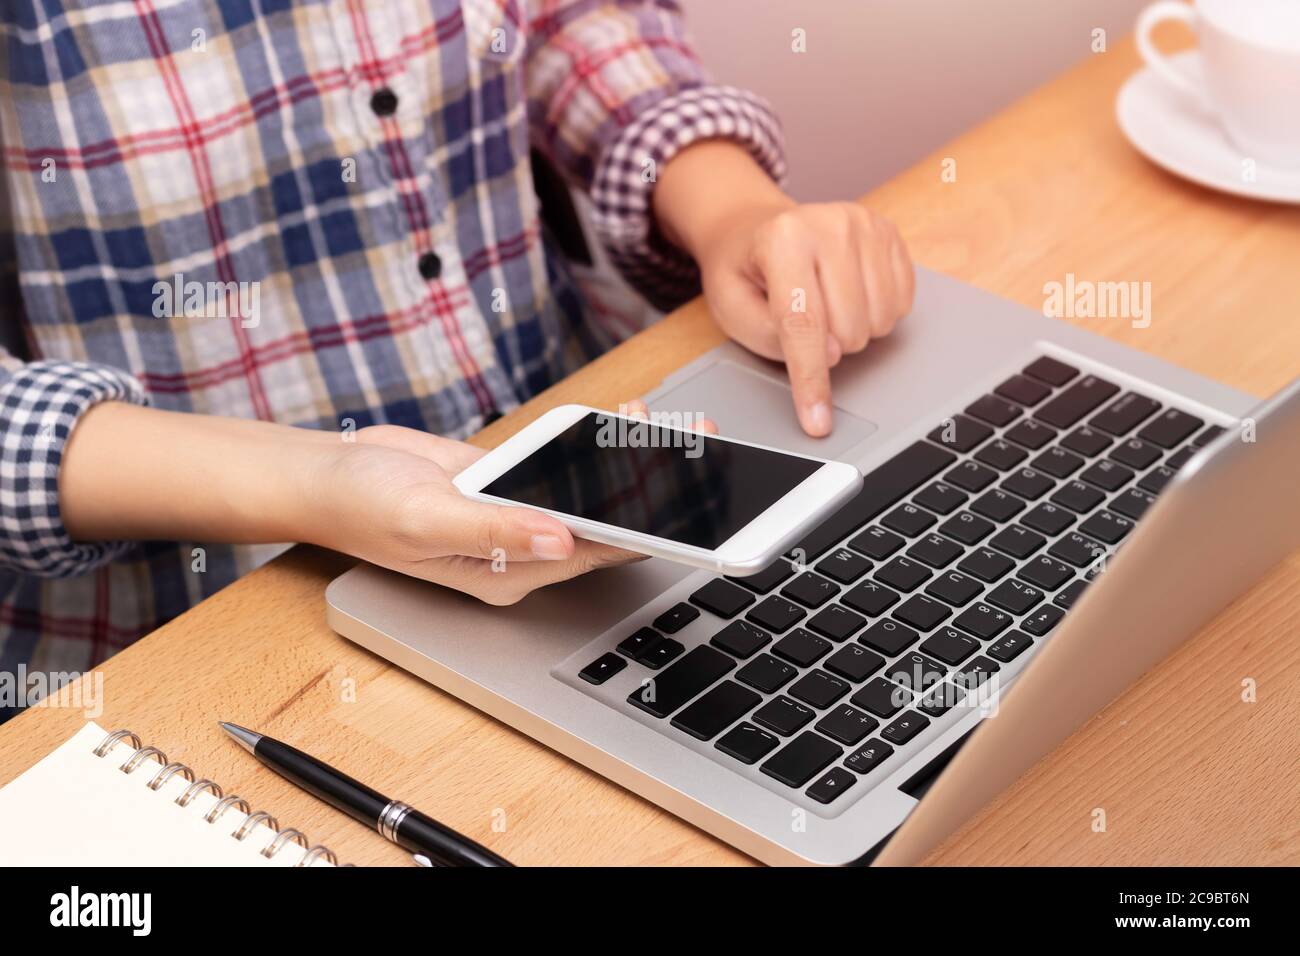 Menschen arbeiten von zu Hause aus mittels Smartphone und Notebook Laptop Computer am Arbeitsplatz, anonyme Gesicht. internet Marketing Konzept Stockfoto